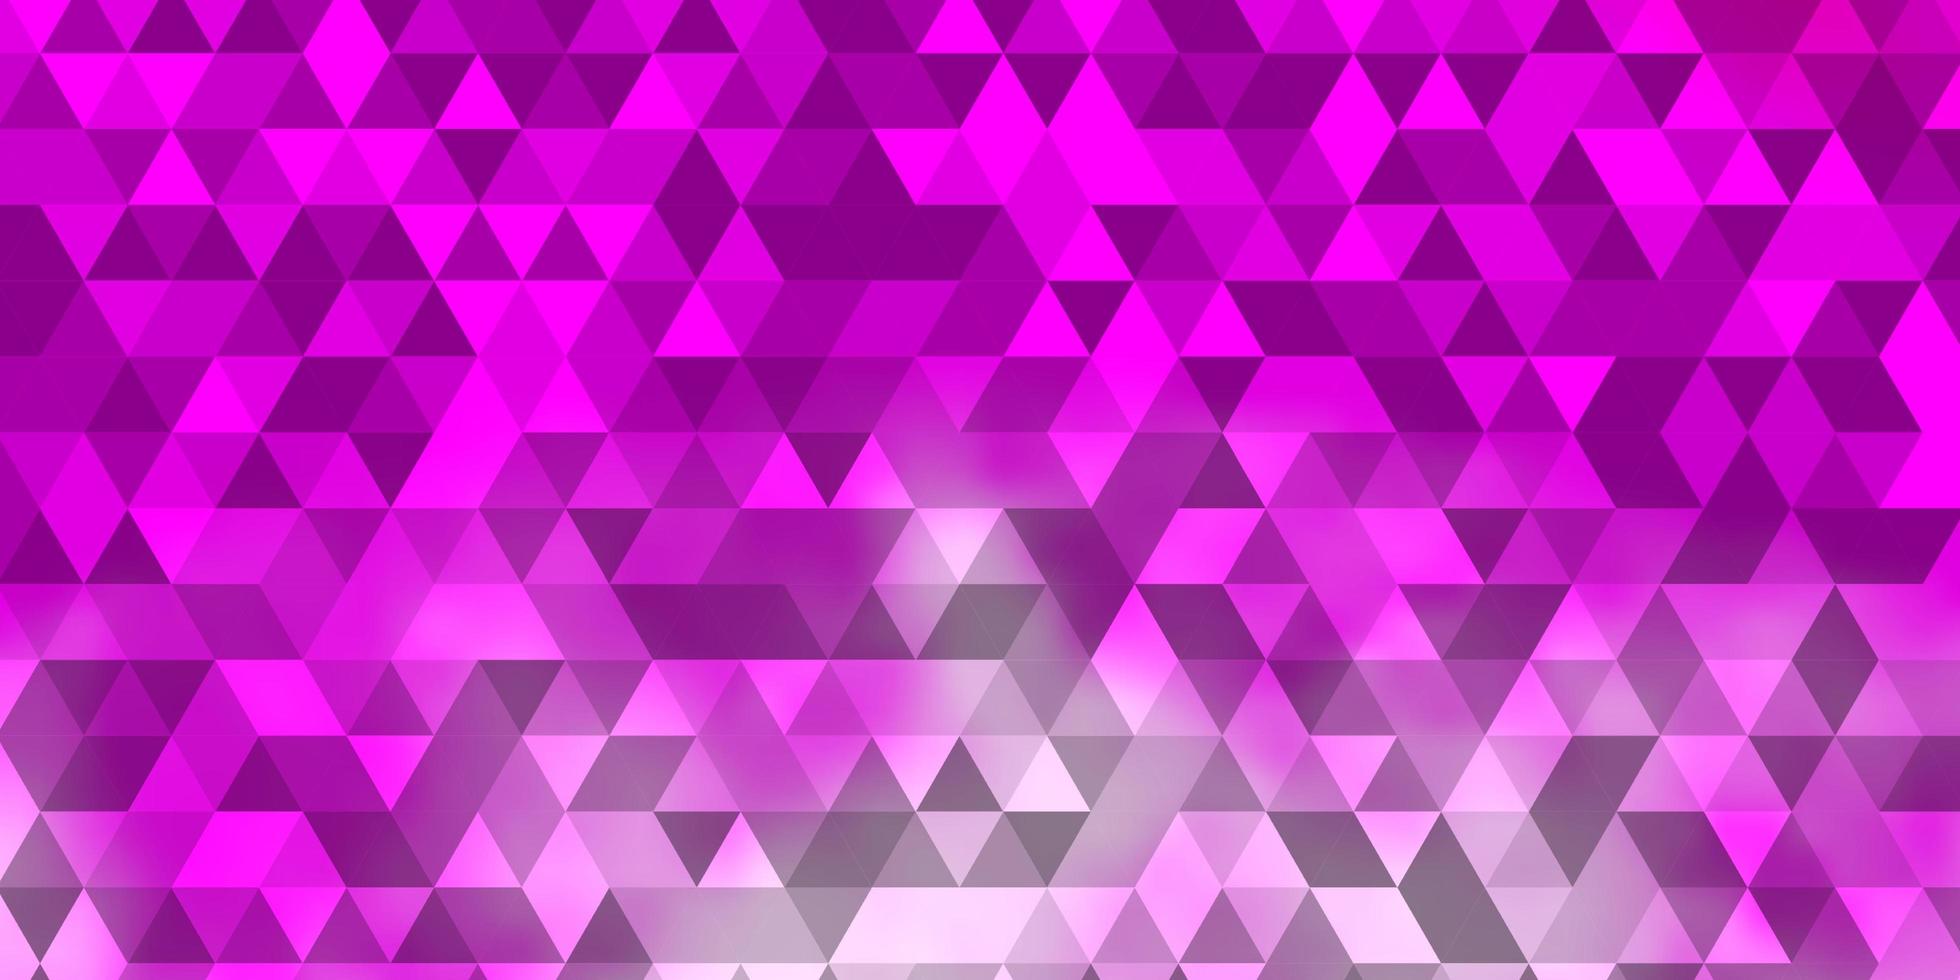 modello vettoriale rosa chiaro con cristalli, triangoli.